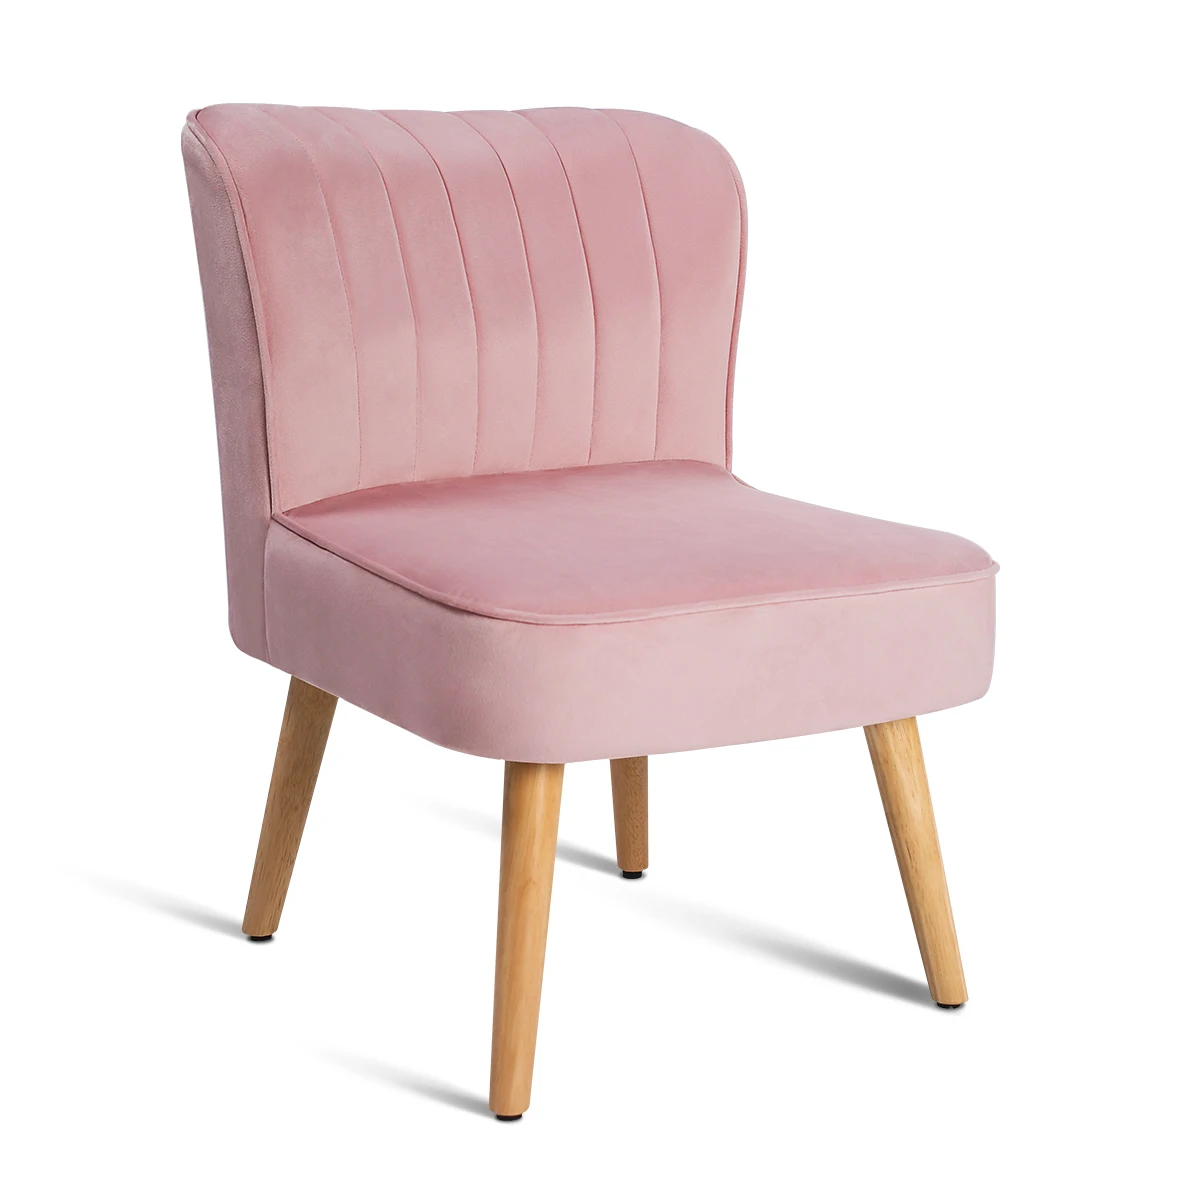 Роскошный мягкий розовый бархатный стул для гостиной, балкона, спальни, маленькой квартиры, одноместный диван, мебель для спальни, 62x48x76 см